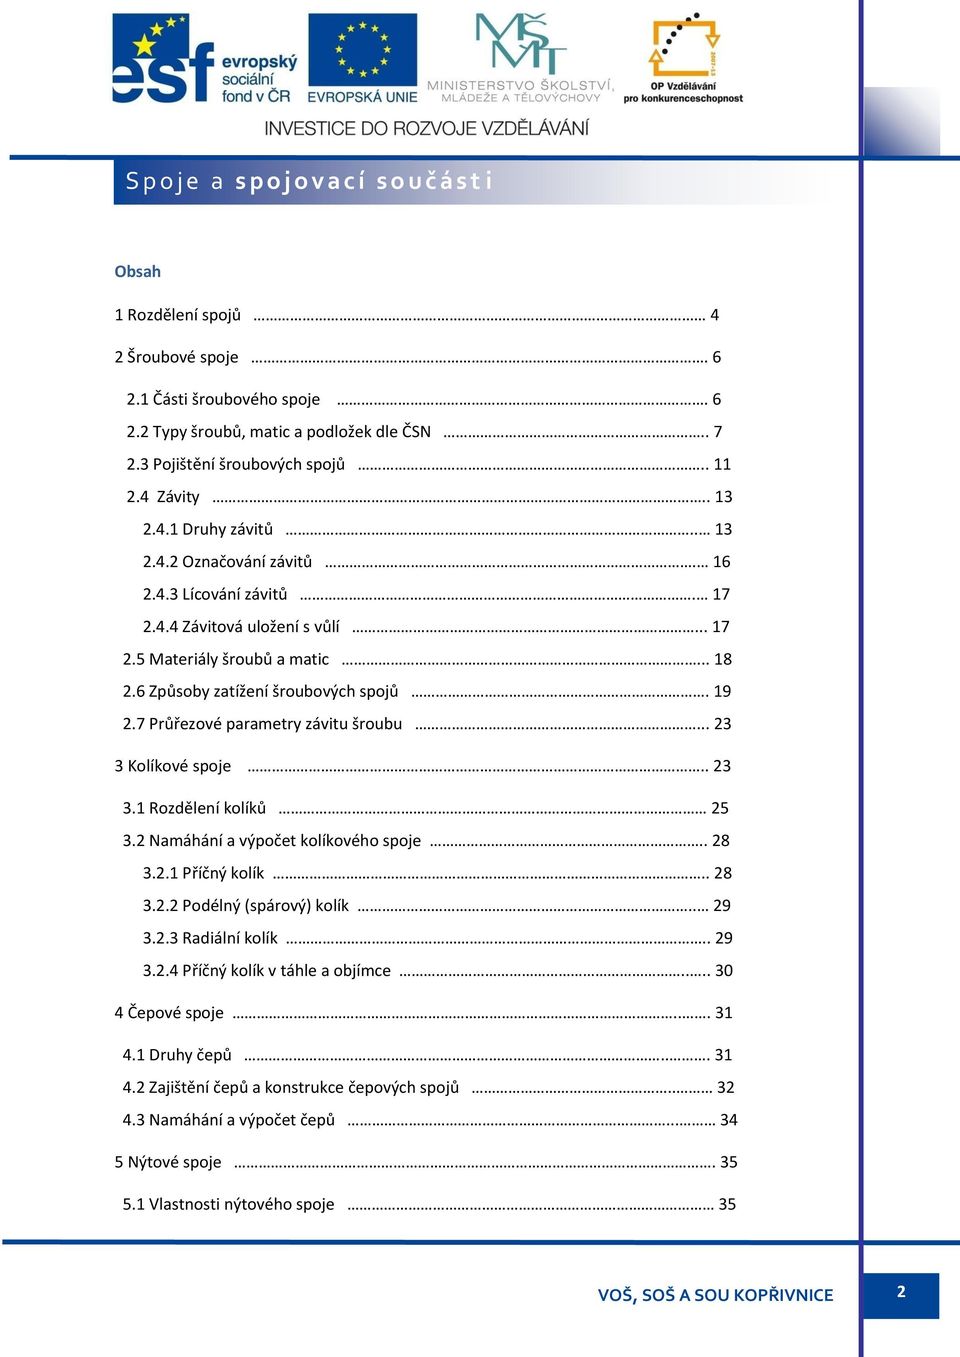 Spoje ve strojírenství - PDF Stažení zdarma